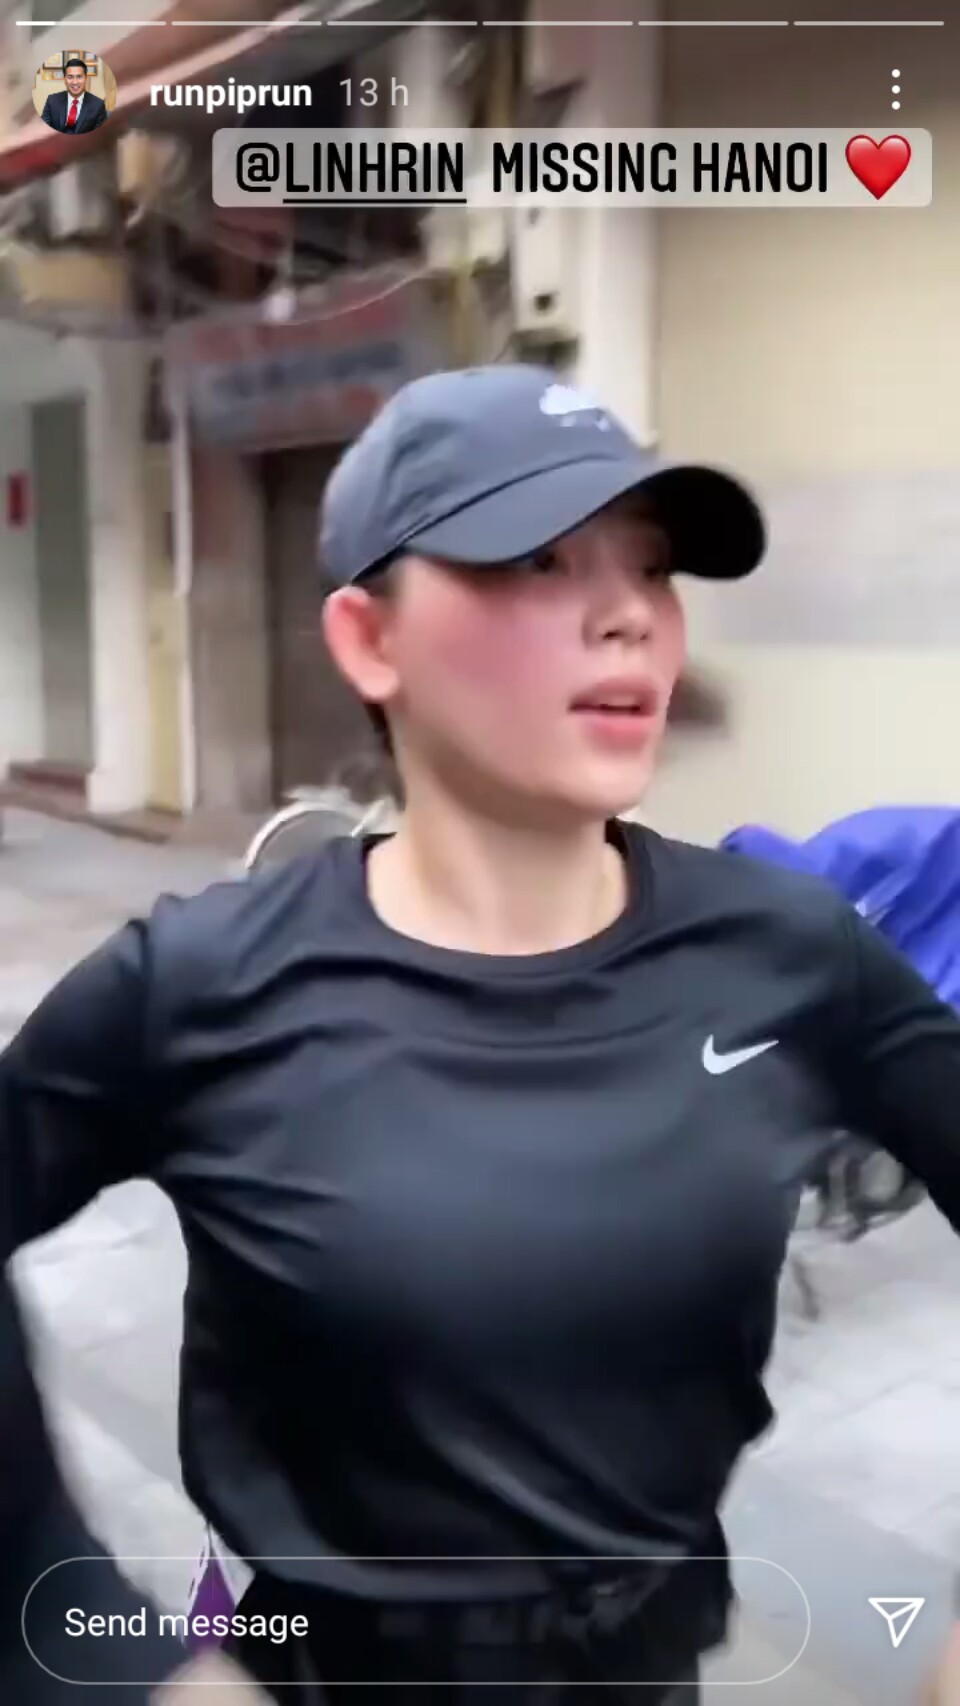 Phillip Nguyễn đăng clip chạy bộ cùng Linh Rin, lộ luôn mặt mộc của bạn gái - Ảnh 2